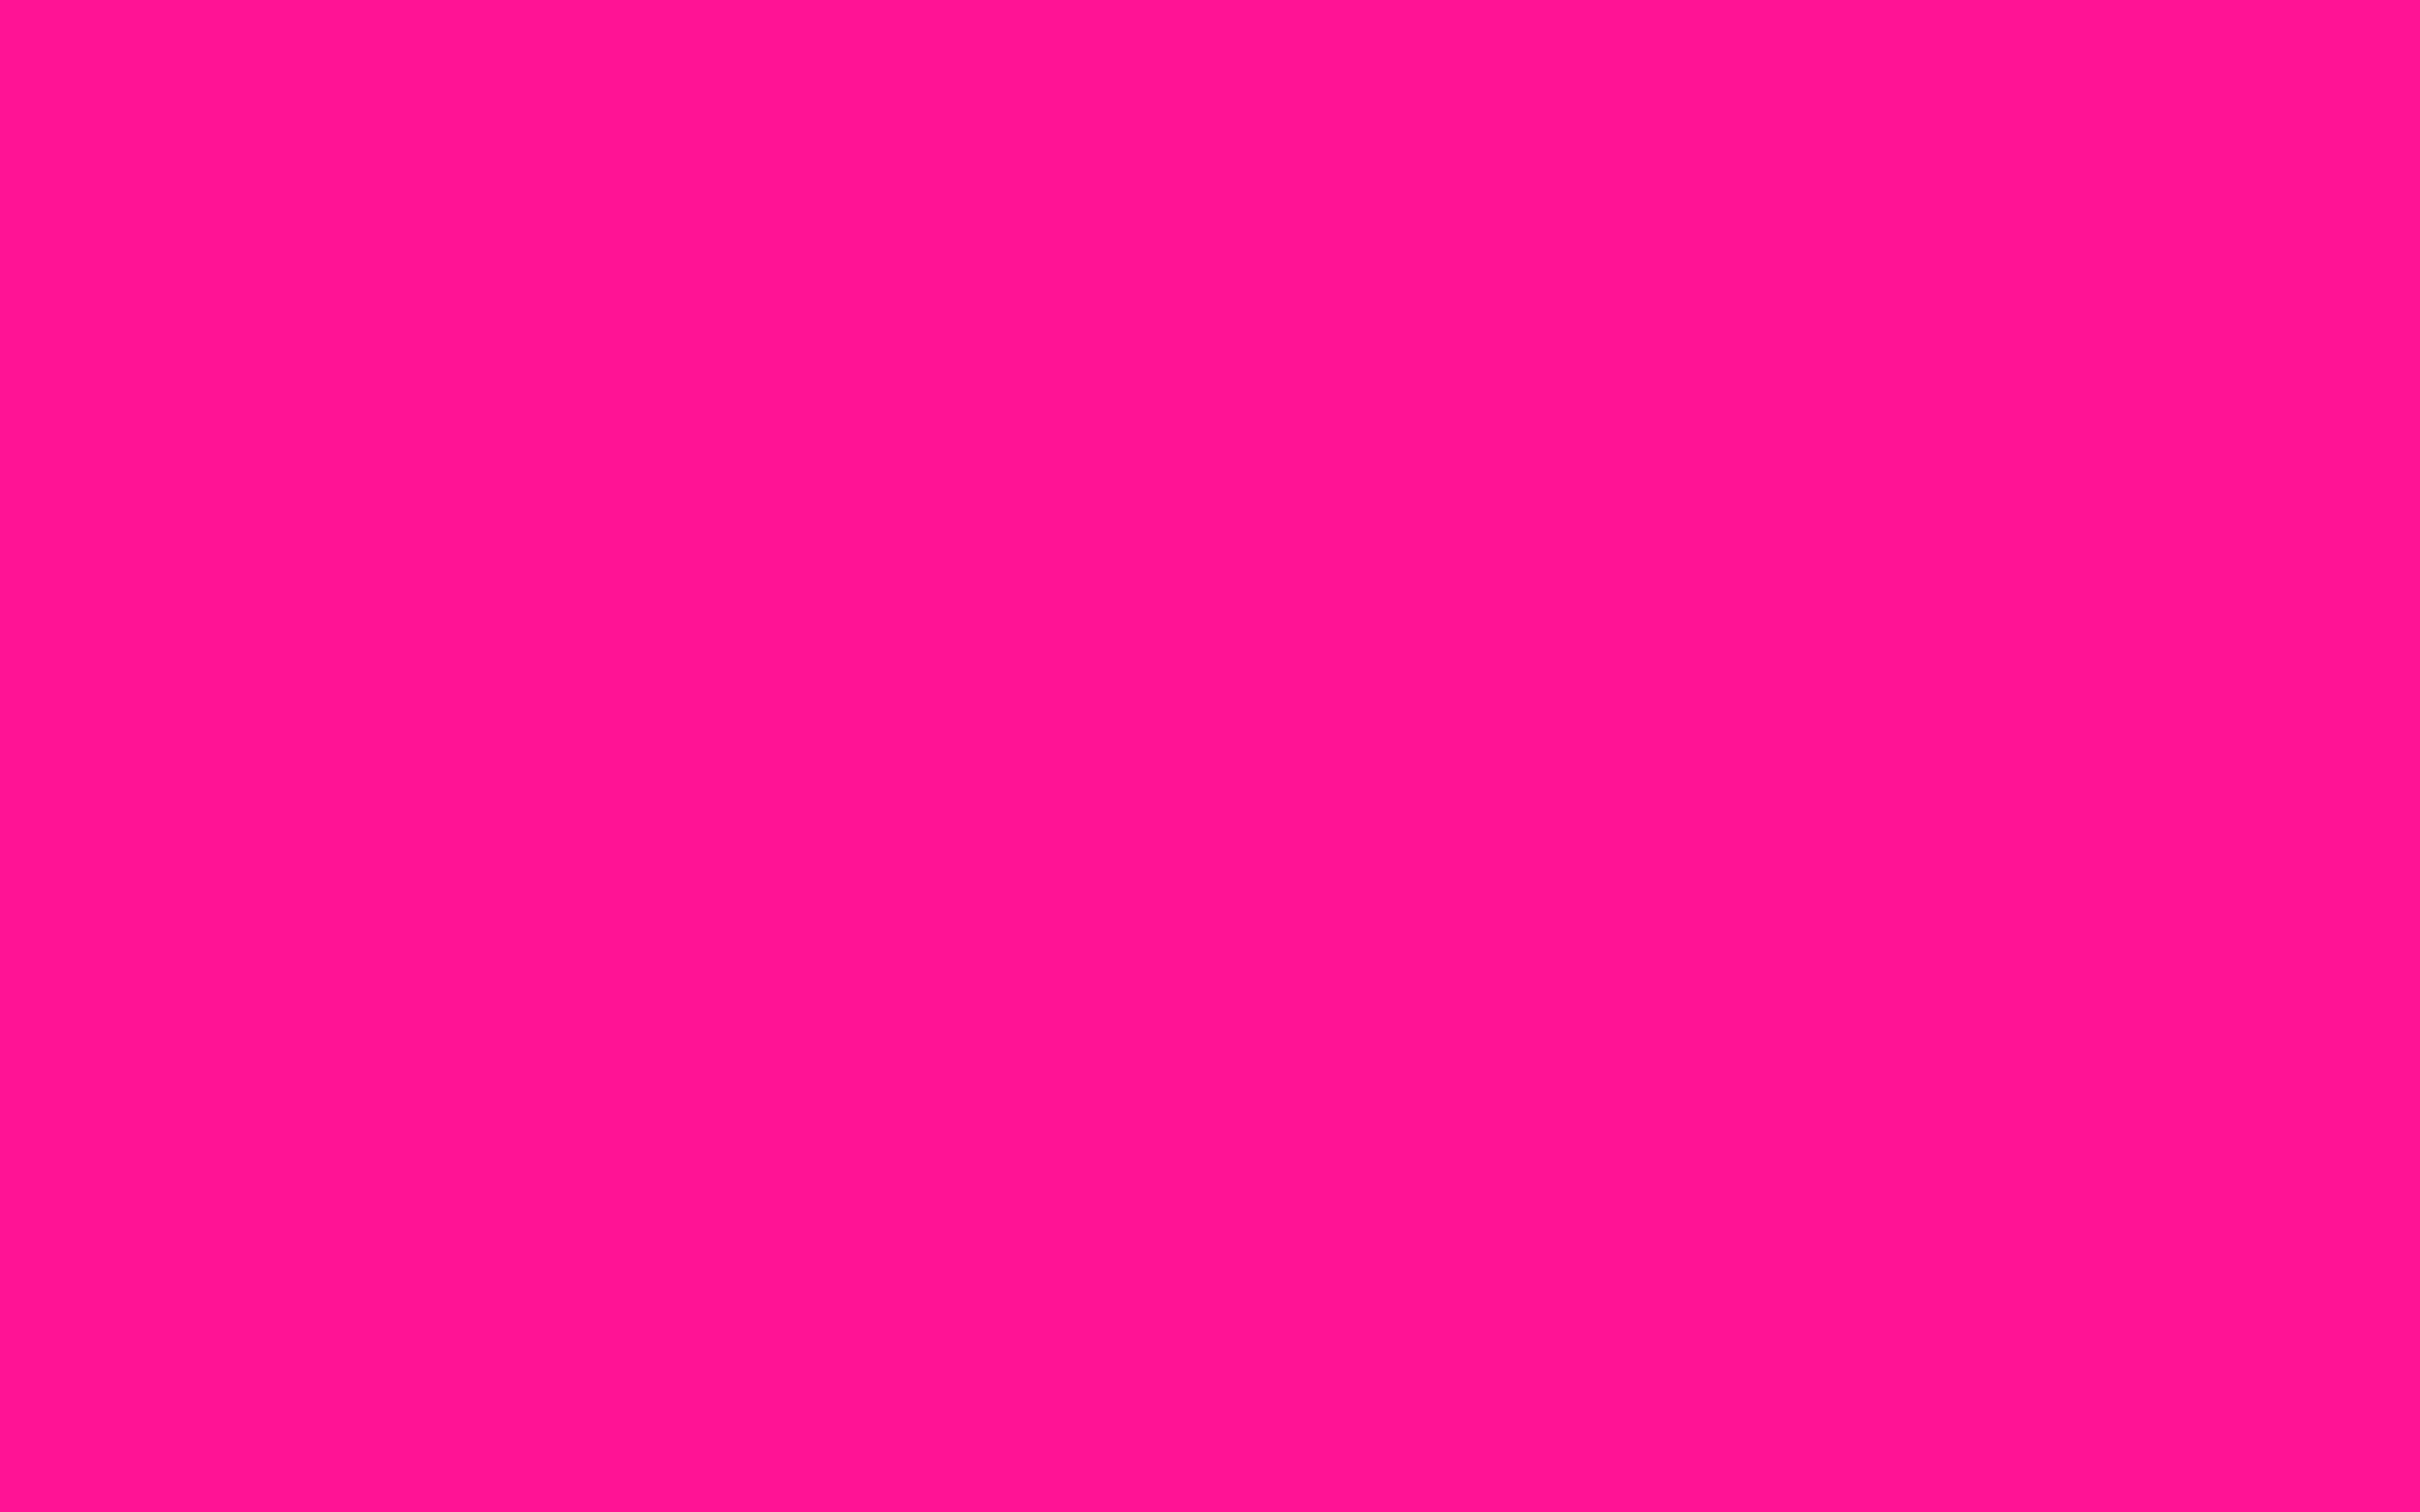 Hình nền màu hồng: Cùng thưởng thức hình nền màu hồng, màu của sự lãng mạn và nữ tính. Không chỉ đem đến cảm giác dịu mắt mà màu hồng còn giúp bạn tạo được phong cách riêng và độc đáo. Với những sắc thái khác nhau, bạn có thể thỏa sức lựa chọn hình ảnh màu hồng để làm nền cho màn hình điện thoại của mình. Còn chần chờ gì nữa, hãy click vào hình ảnh để tận hưởng vẻ đẹp của màu hồng!